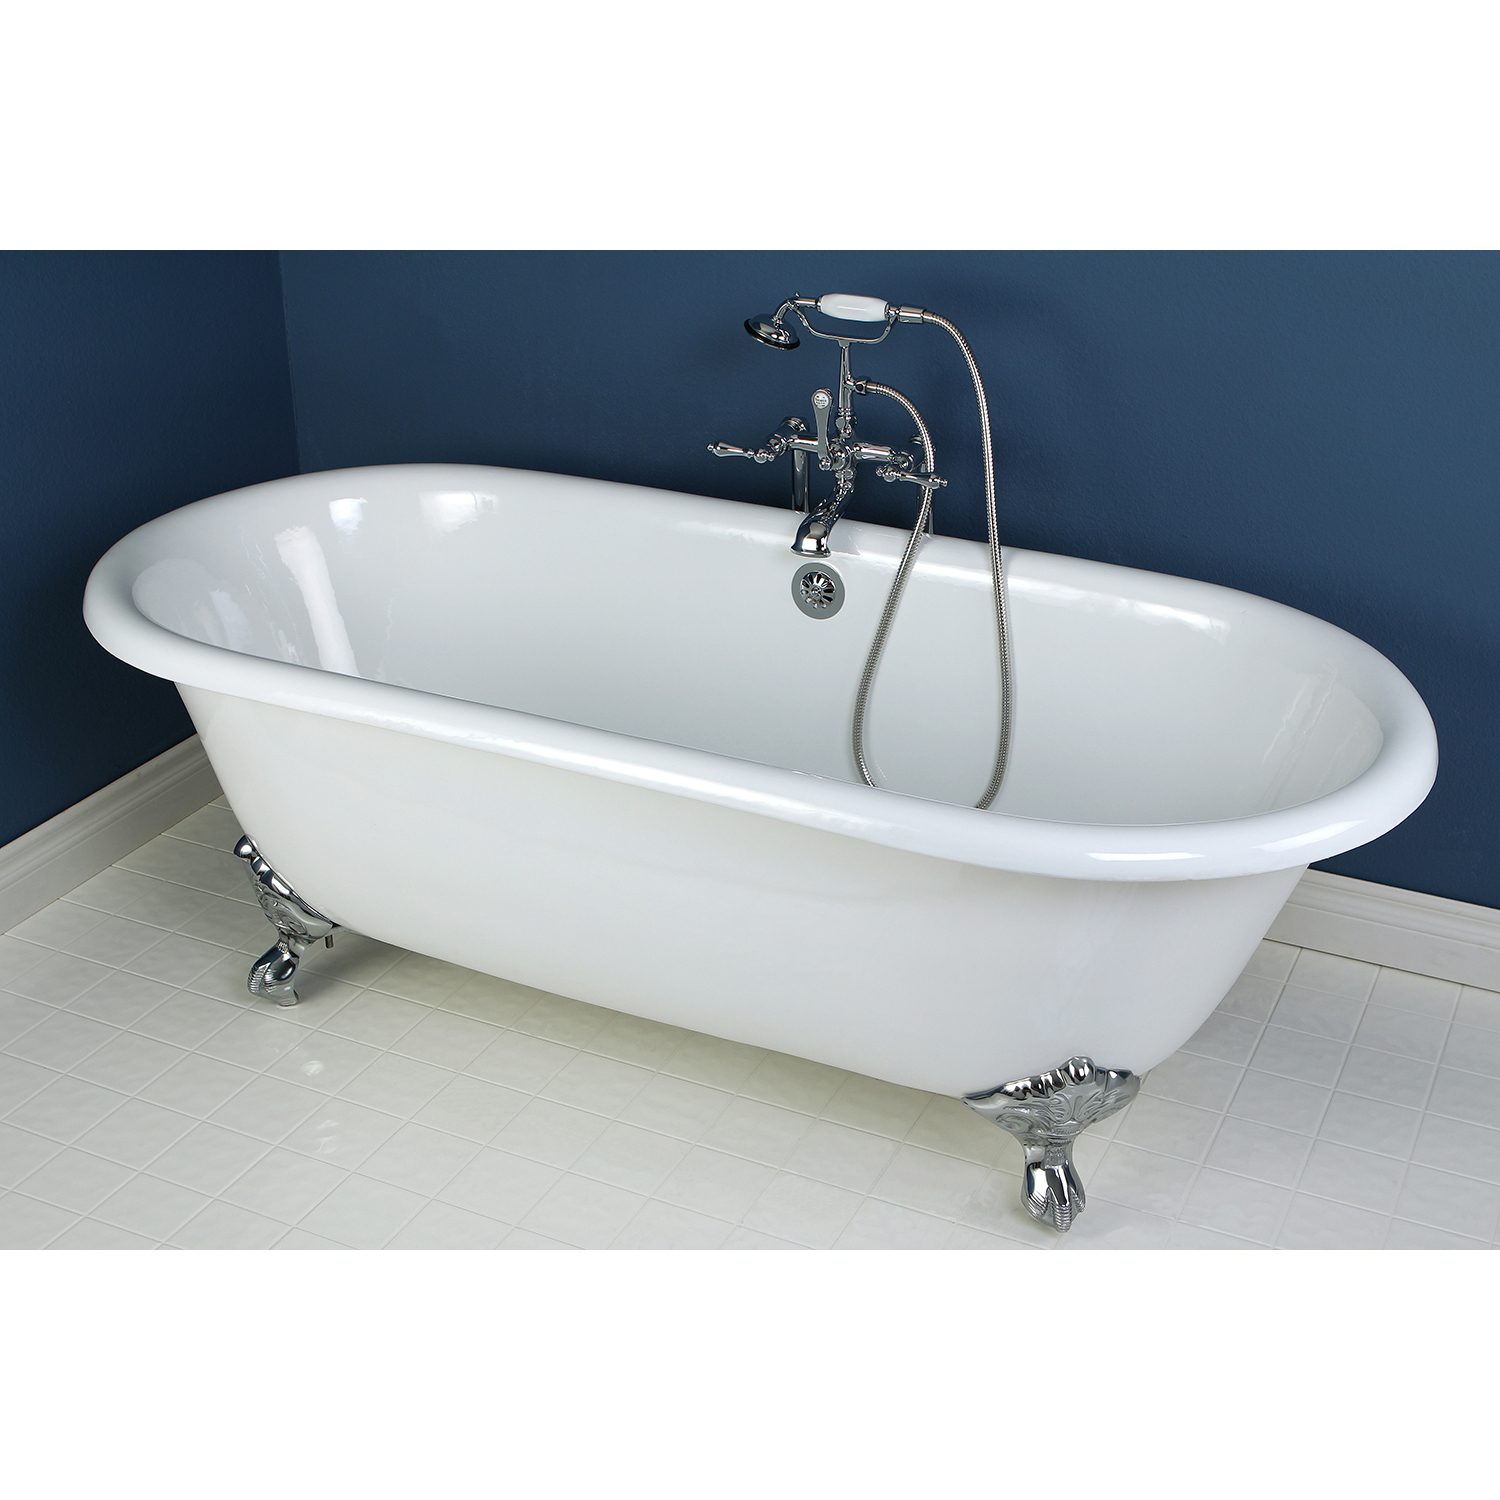 Clawfoot Bath Tub With Chrome Feet, 66 Inch Cast Iron Bathtub